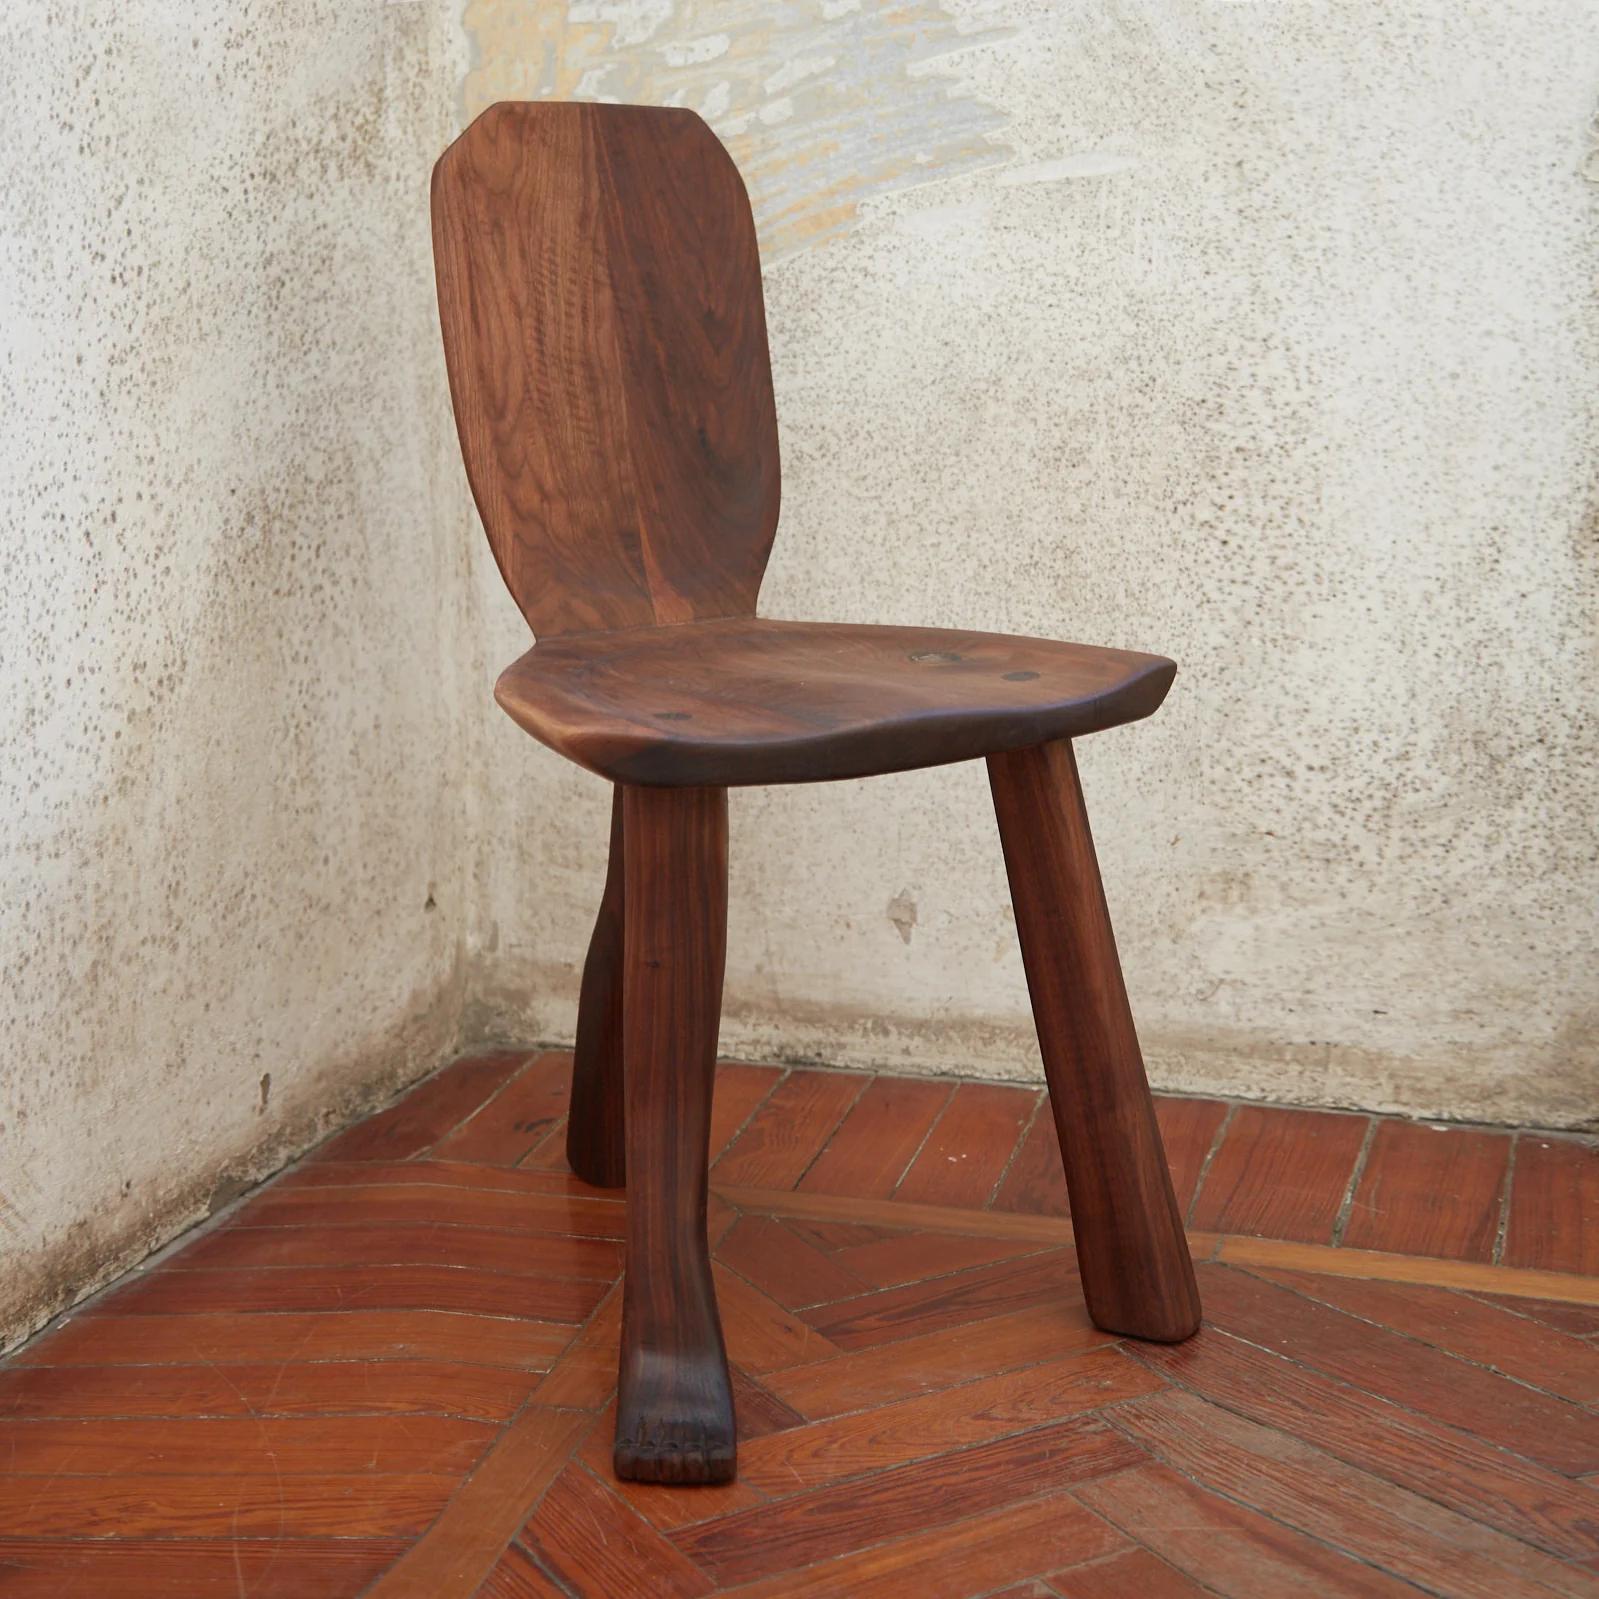 Fuß-Akzentstuhl von Project 213A
Abmessungen: B 48 x T 35 x H 79 cm
MATERIALIEN: Nussbaum

Der Foot Akzentstuhl ist aus Nussbaumholz gefertigt und steht auf 3 unregelmäßigen Beinen. Die breitere Sitzfläche macht diesen Stuhl zu einer besonderen